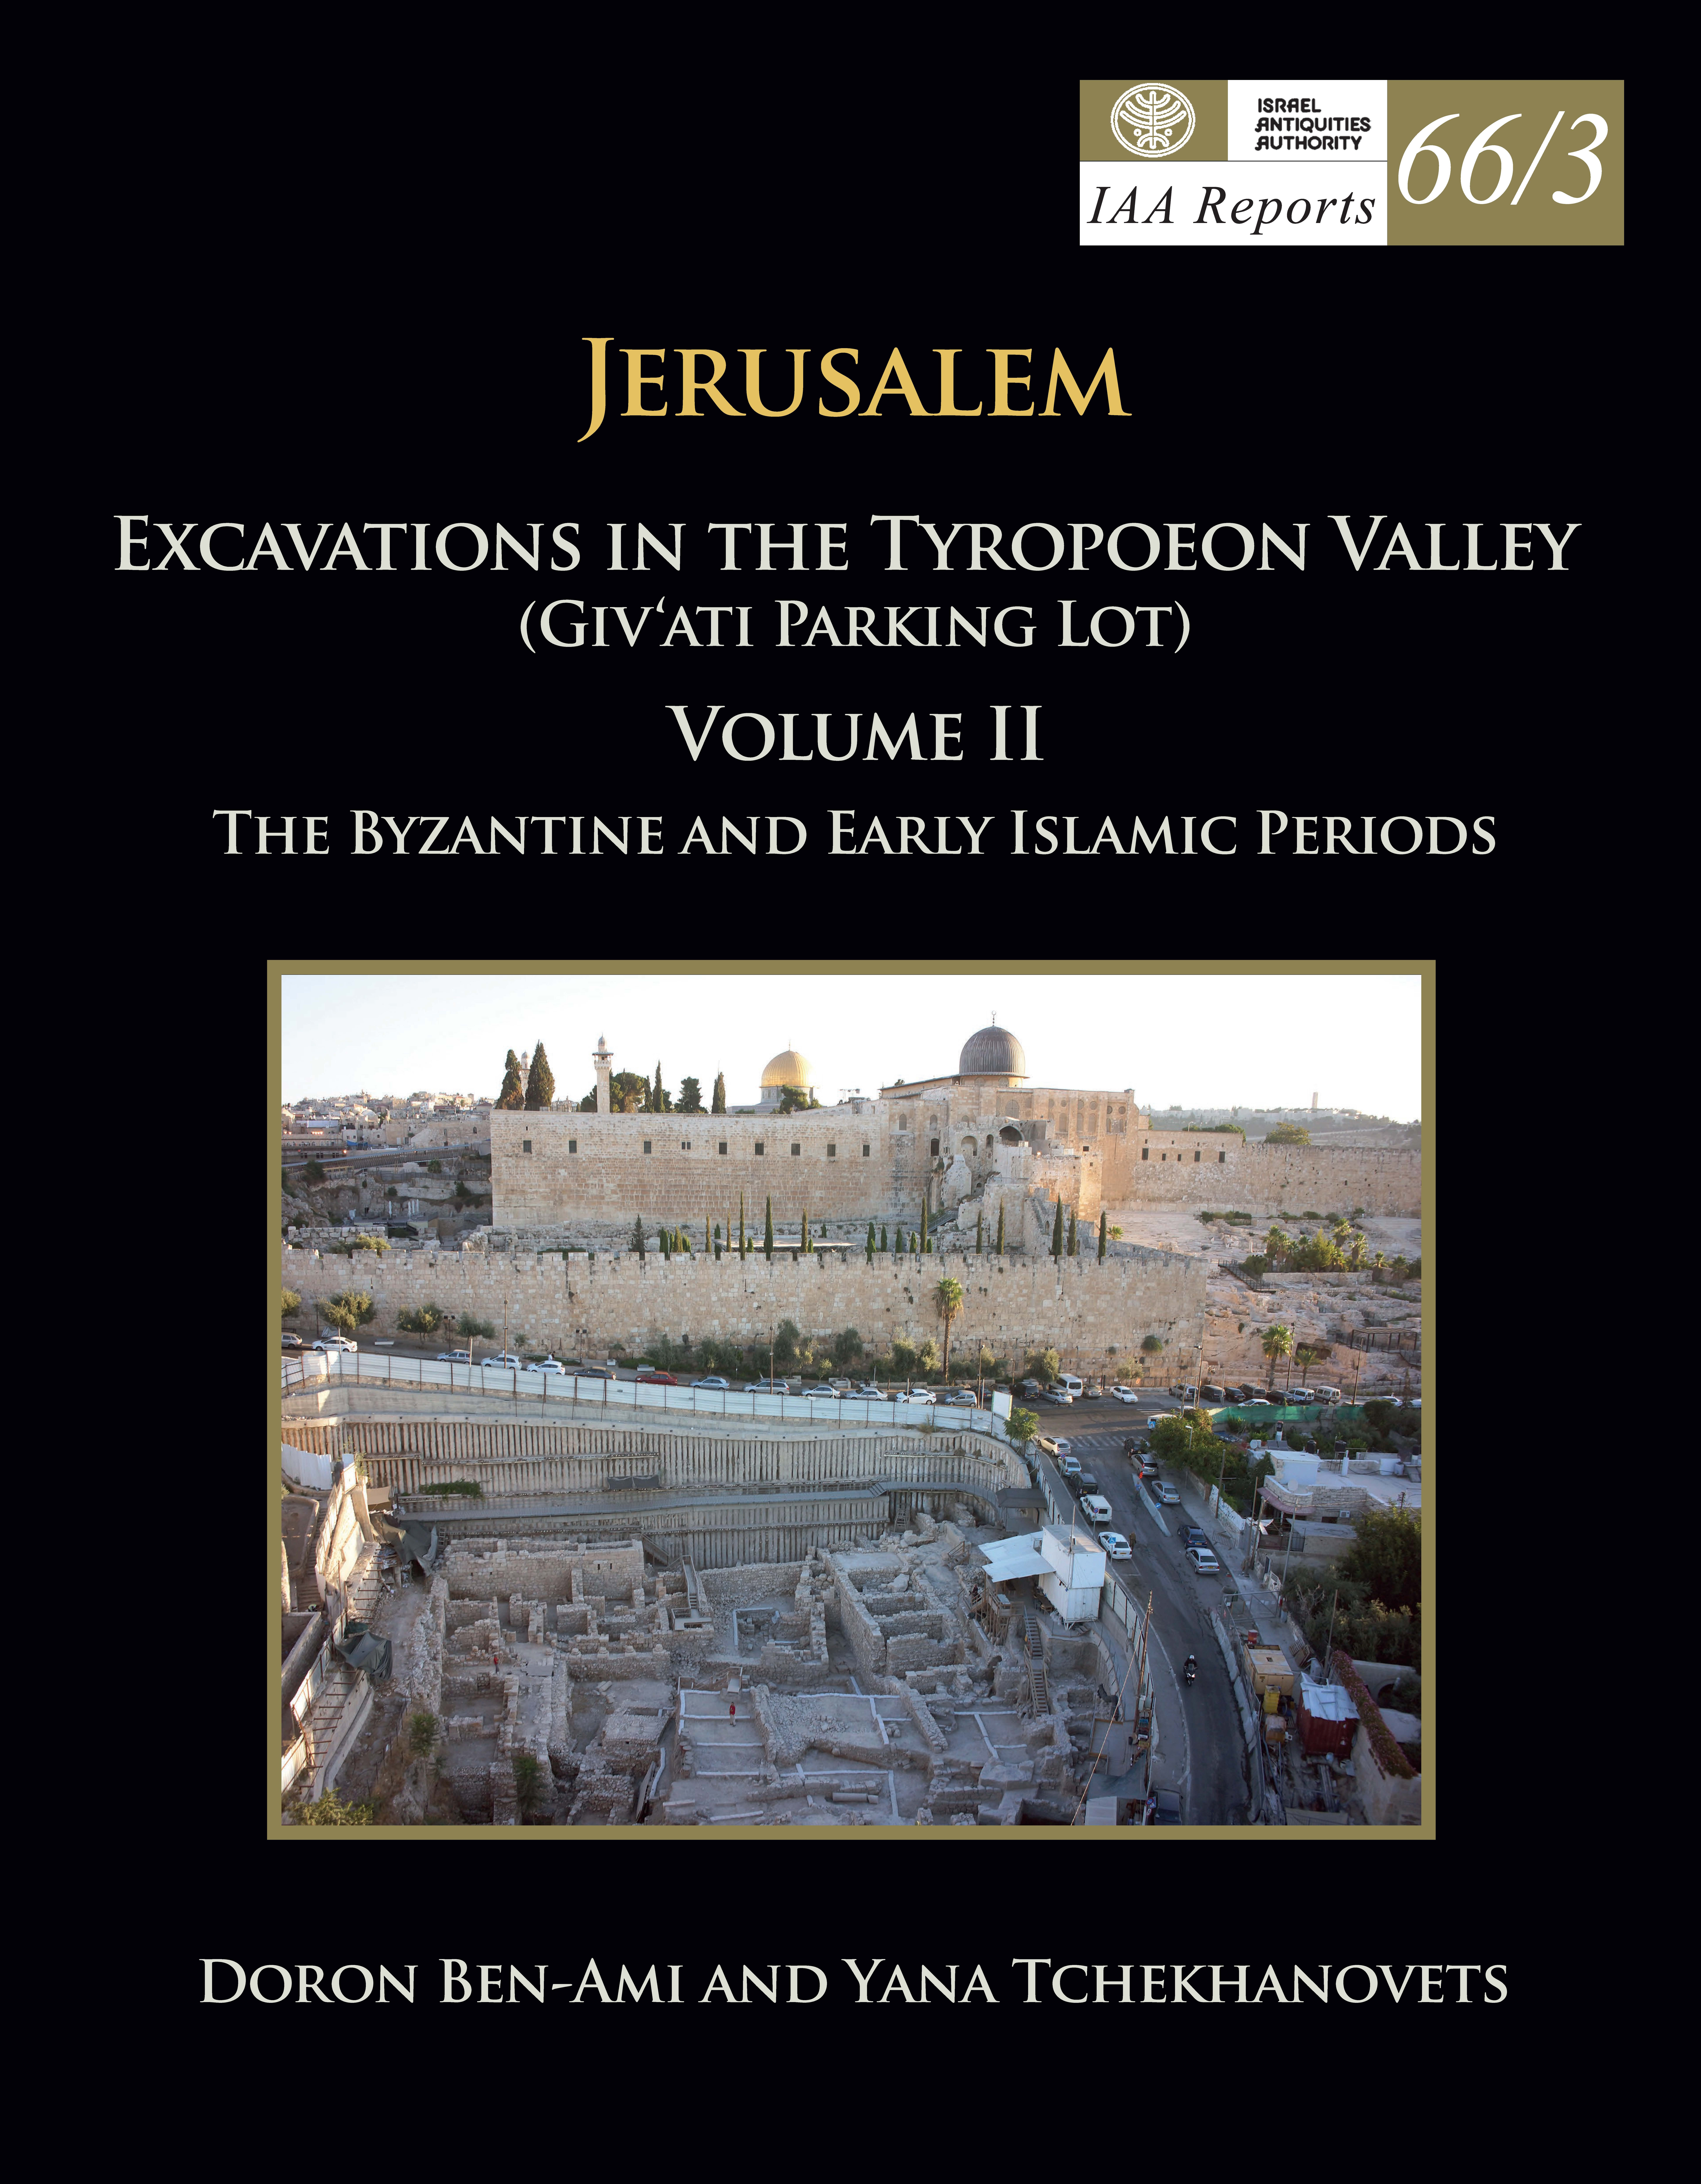 IAA Reports 66/3, ירושלים חפירות בעמק הטירופיאון חניון גבעתי כרך: II התקופה הביזנטית והתקופות האיסלמיות הקדומות